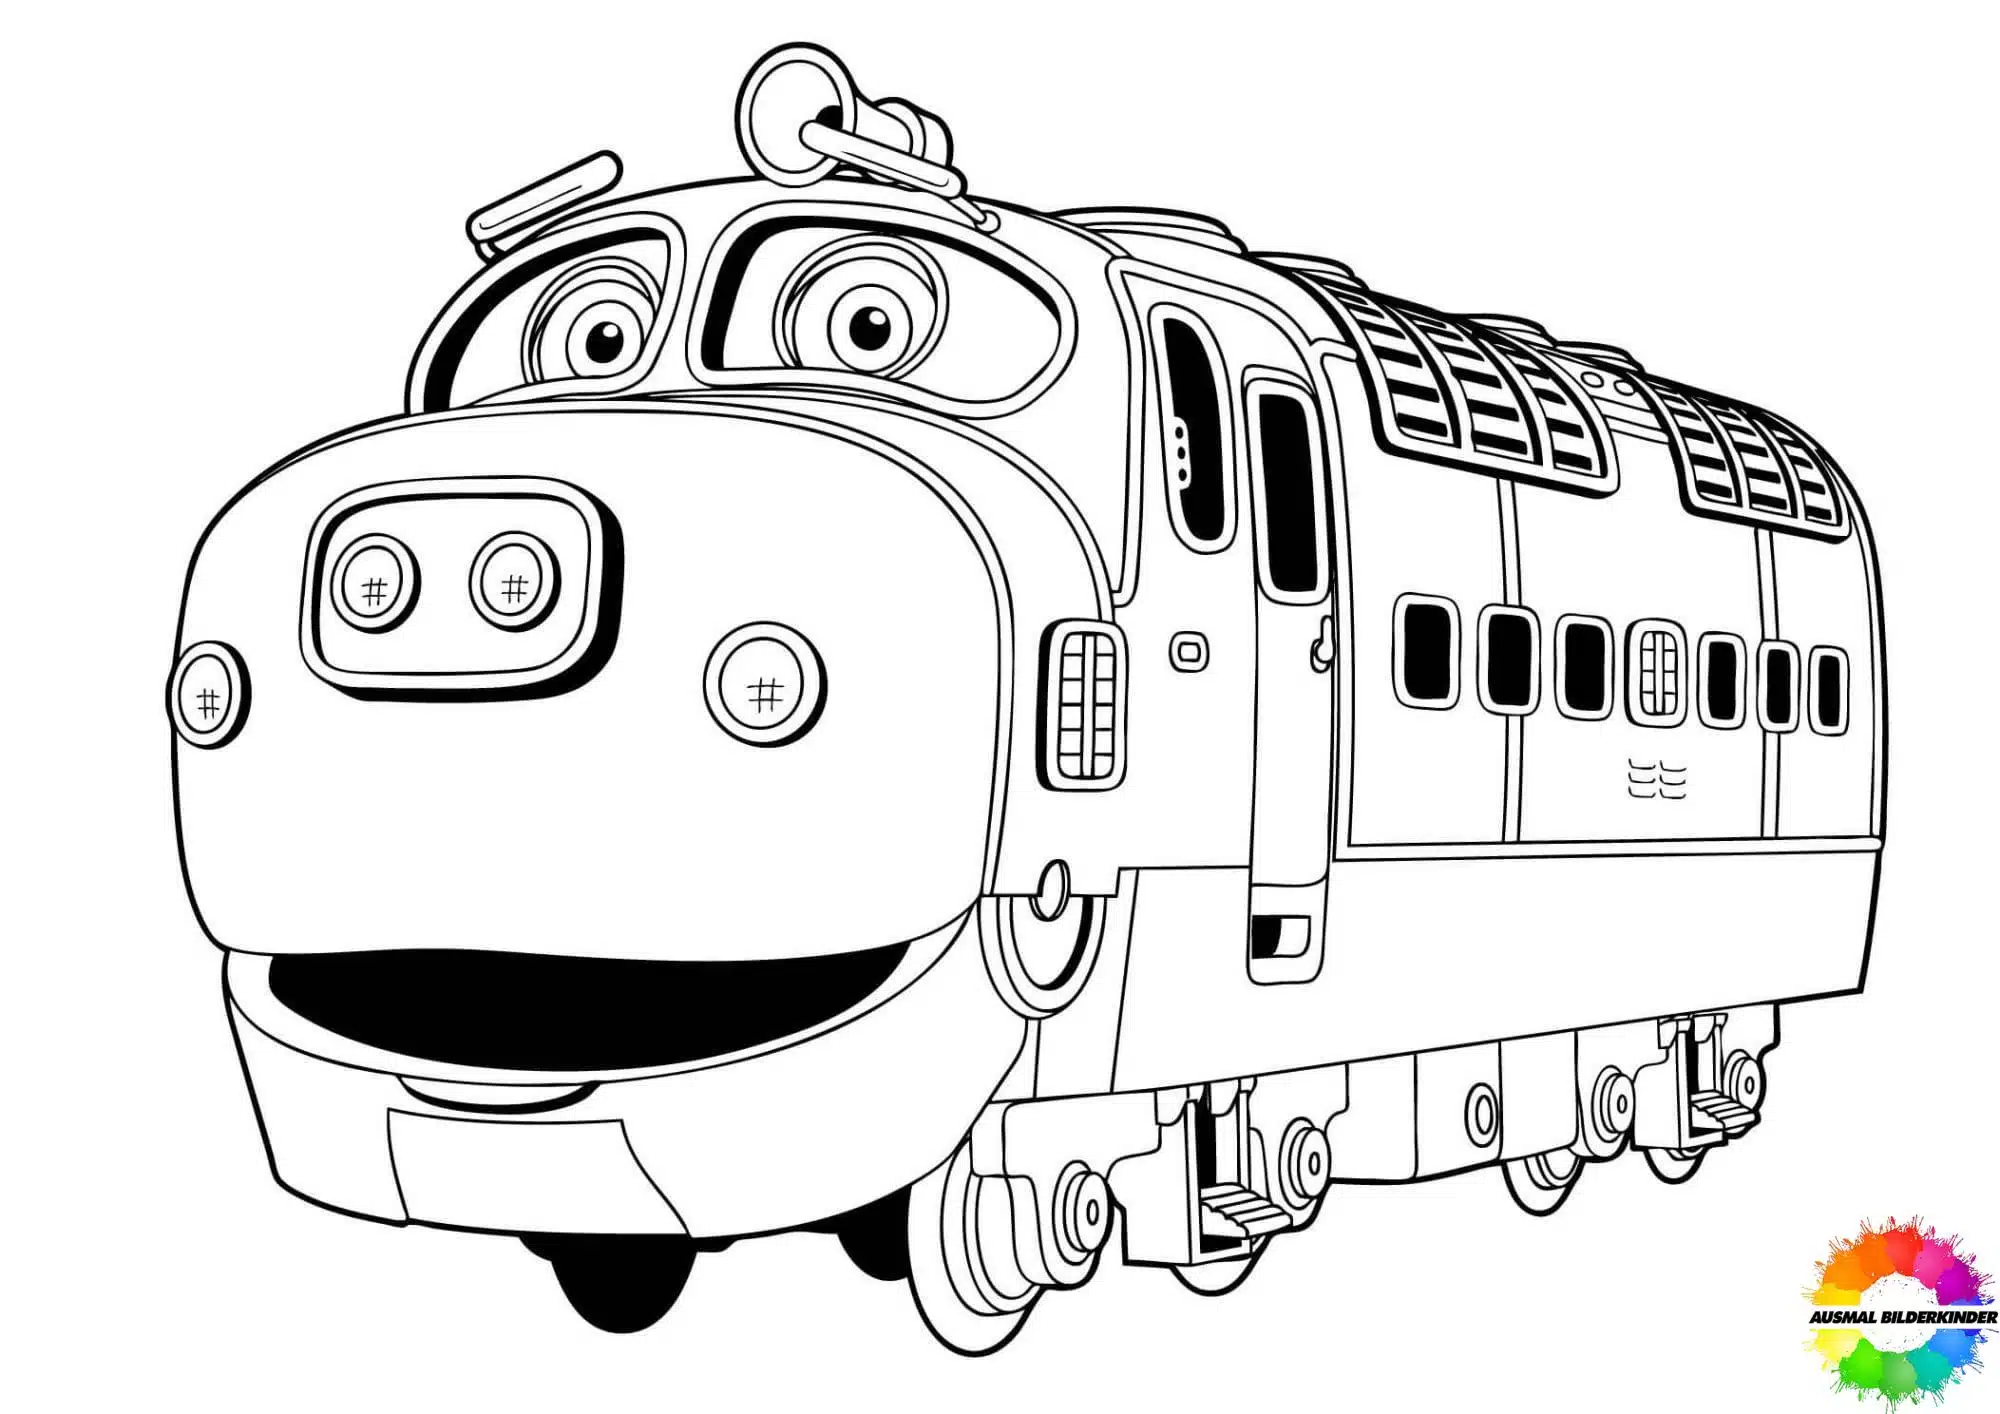 Zug 60